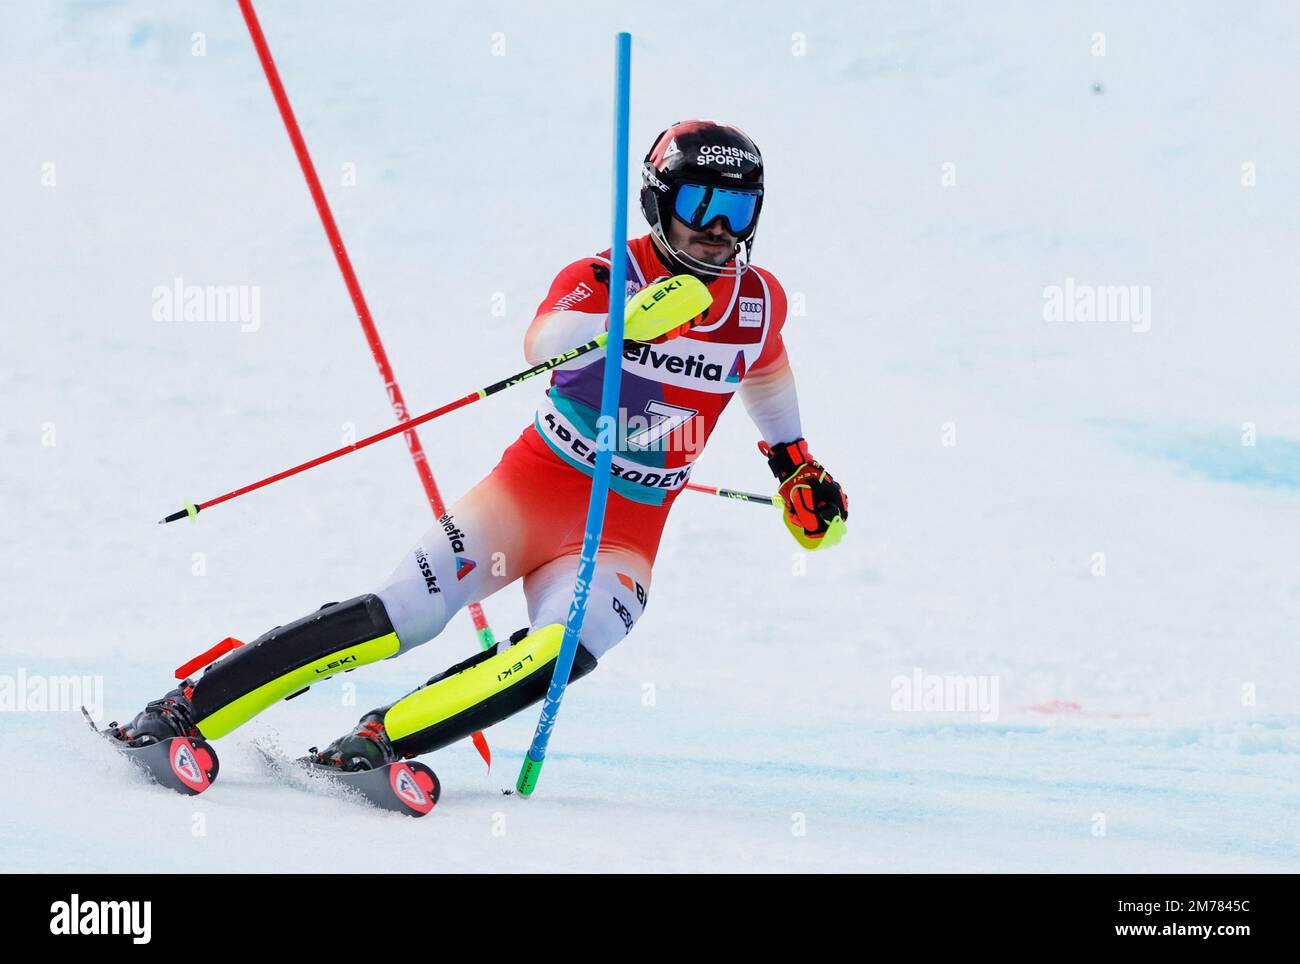 Ski alpin - FIS coupe du monde de ski alpin - Slalom masculin - Adelboden, Suisse - 8 janvier 2023 Soic Meillard en action REUTERS/Stefan Wermuth Banque D'Images